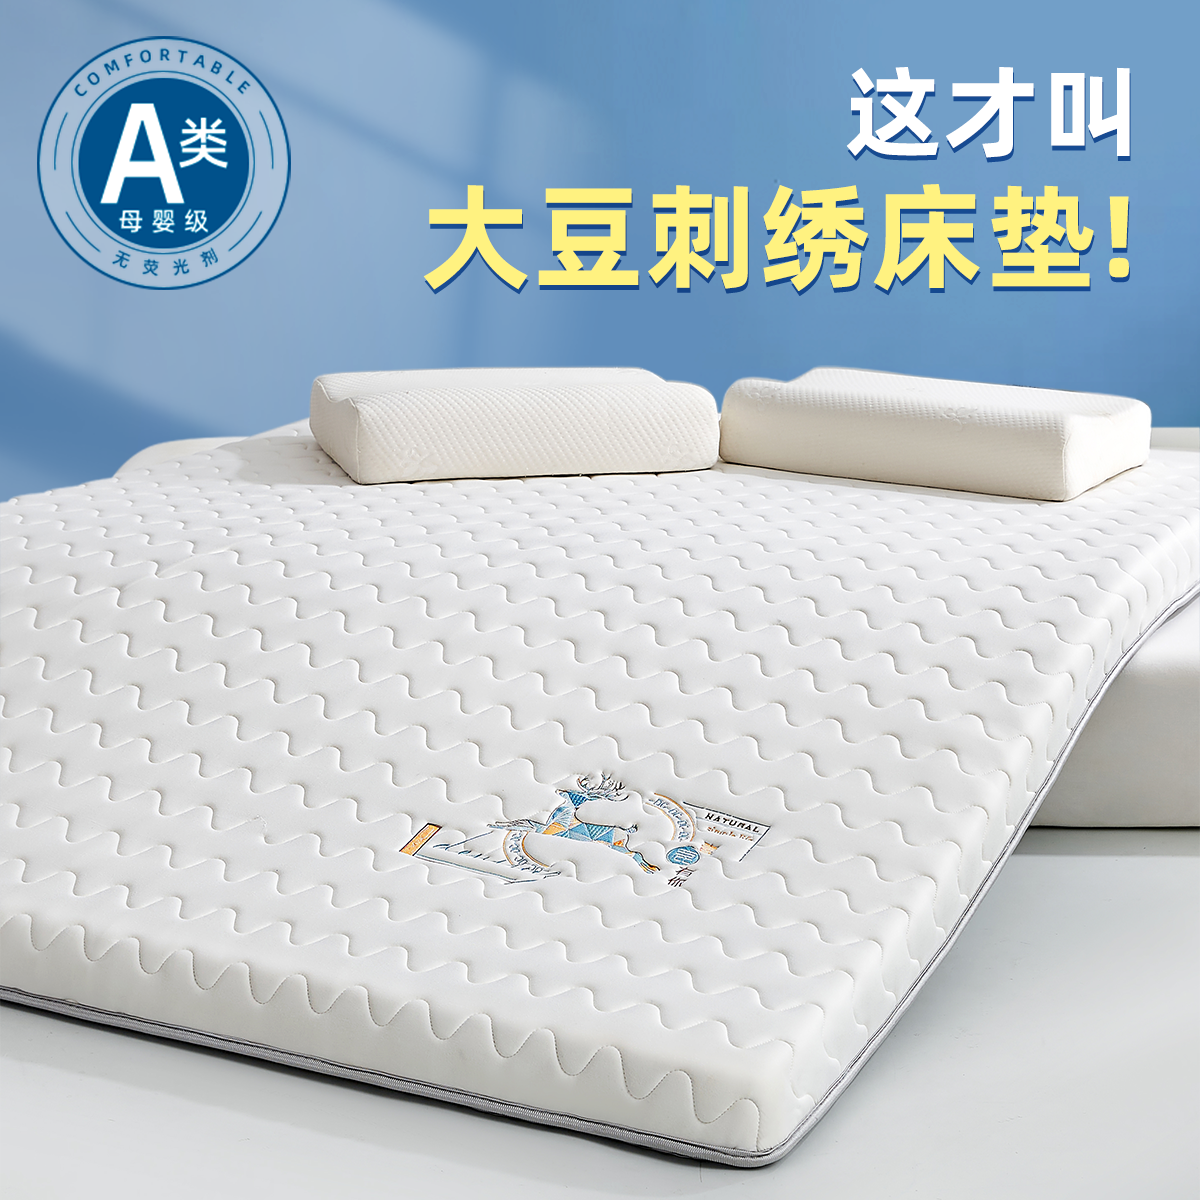 大豆纤维床垫软垫家用卧室床褥垫子1米8儿童褥子秋冬单人垫被铺底